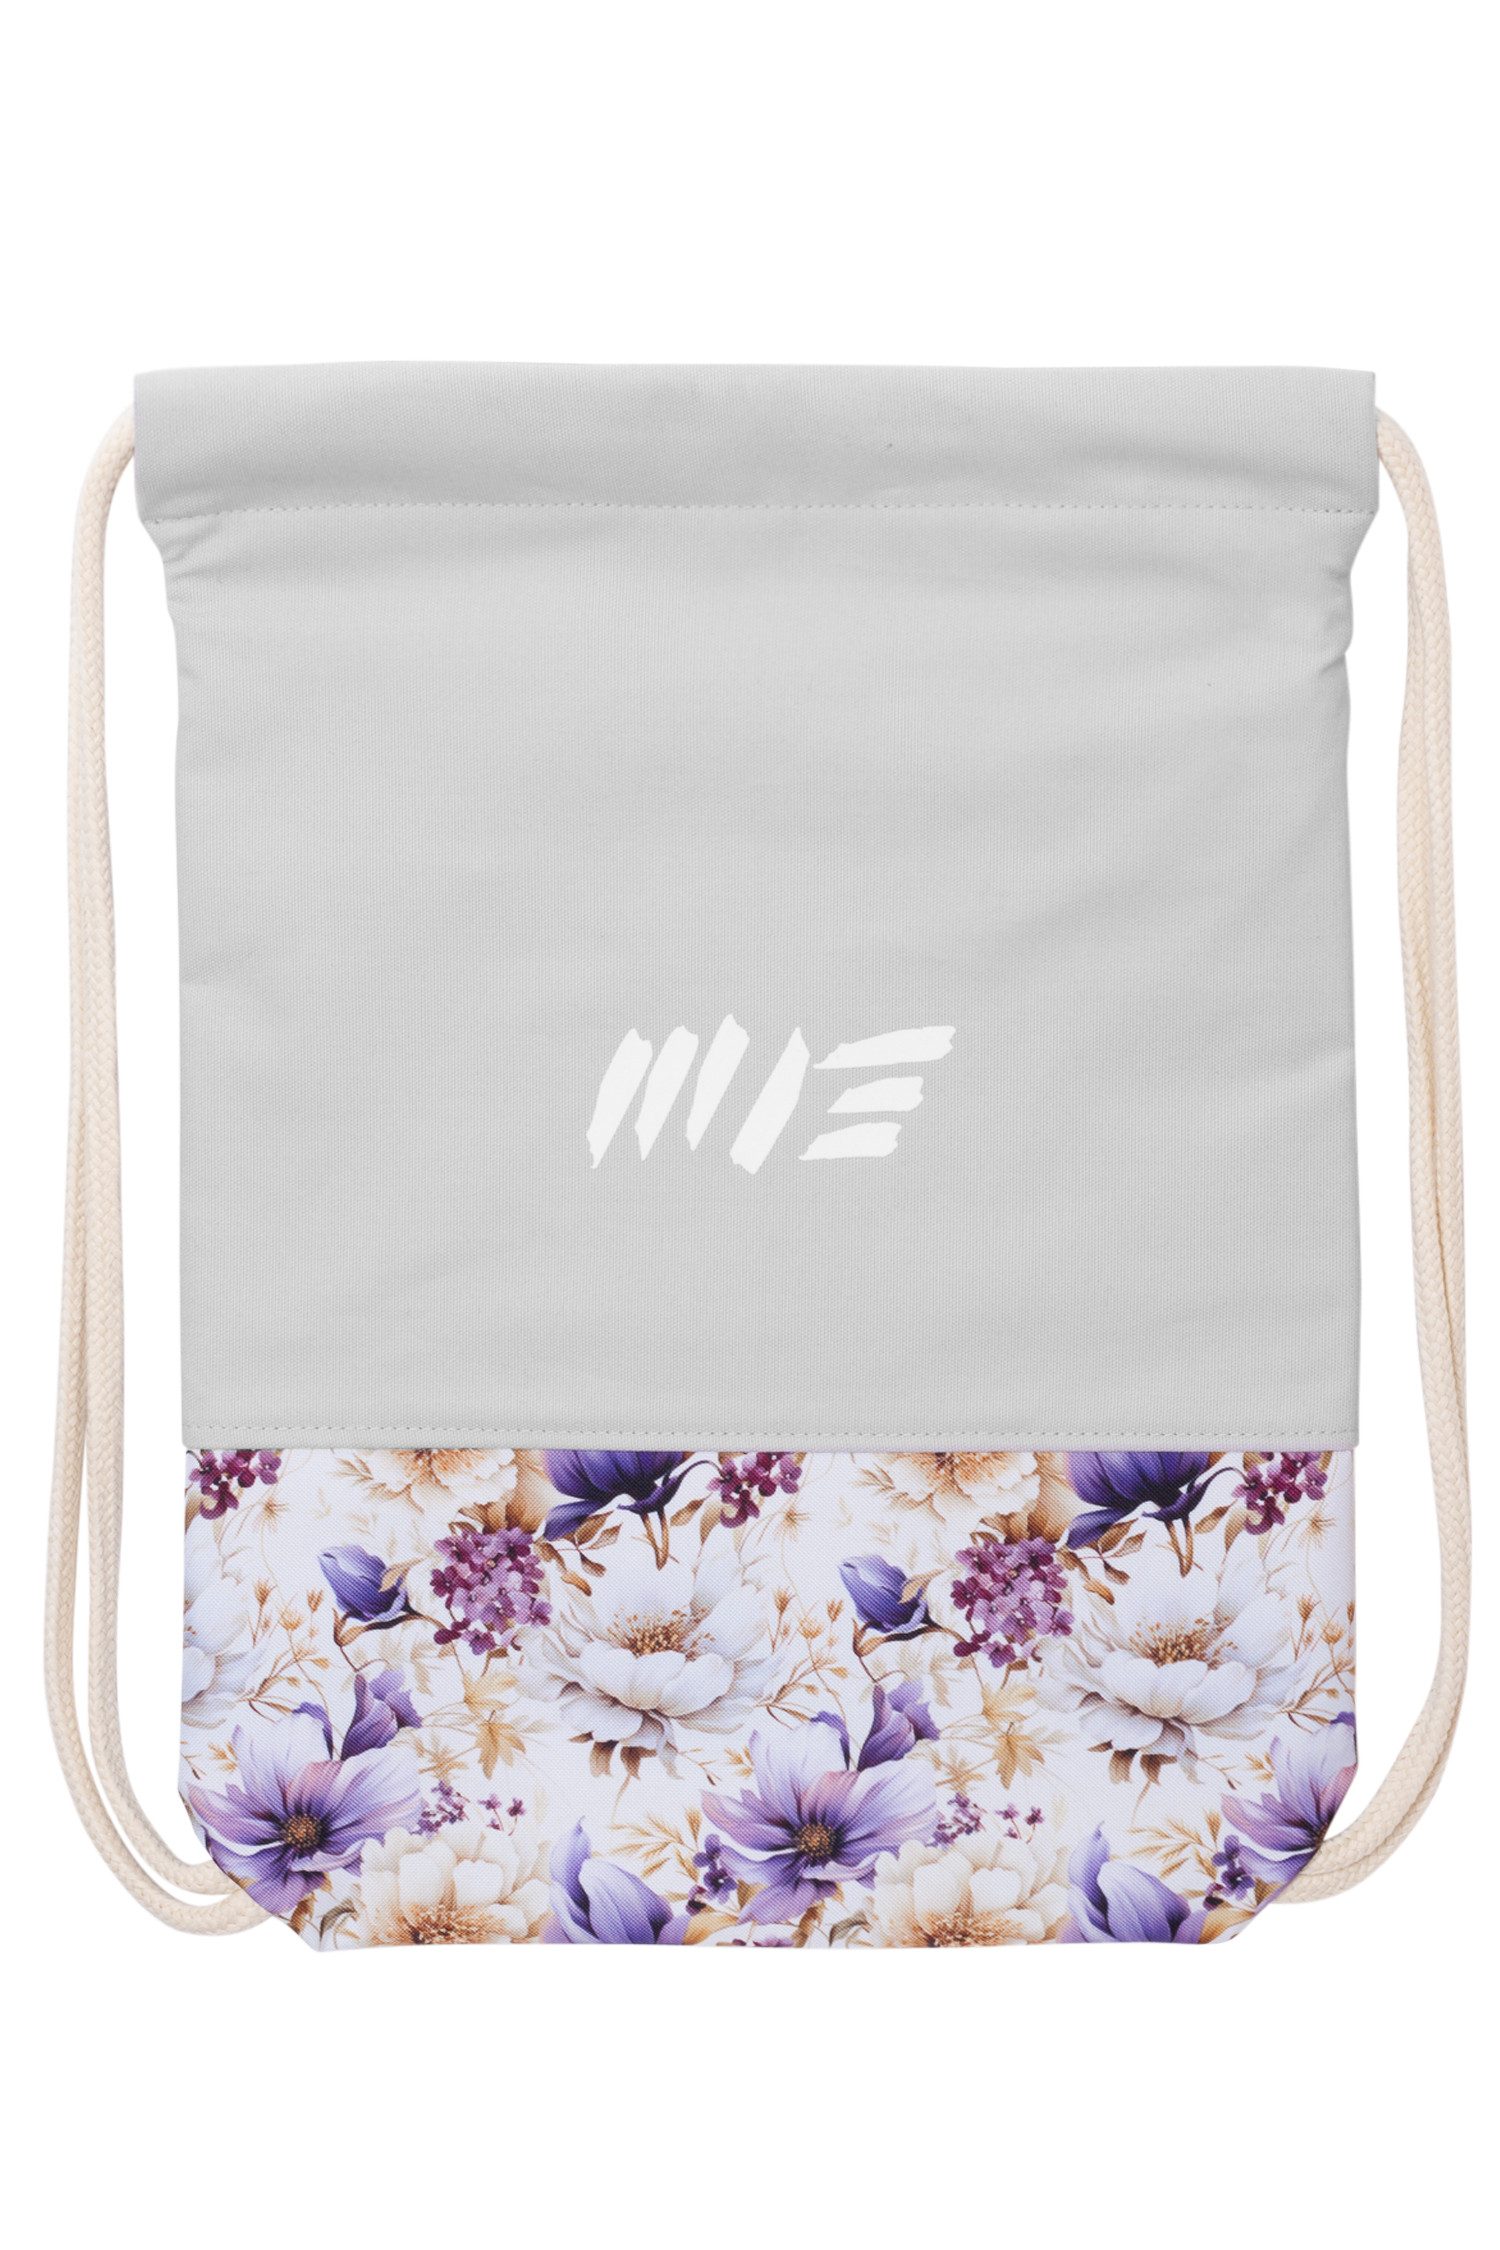 Manufaktur13 Turnbeutel Floral Sports Bag - Sportbeutel, Gymbag, mit Blumenmuster